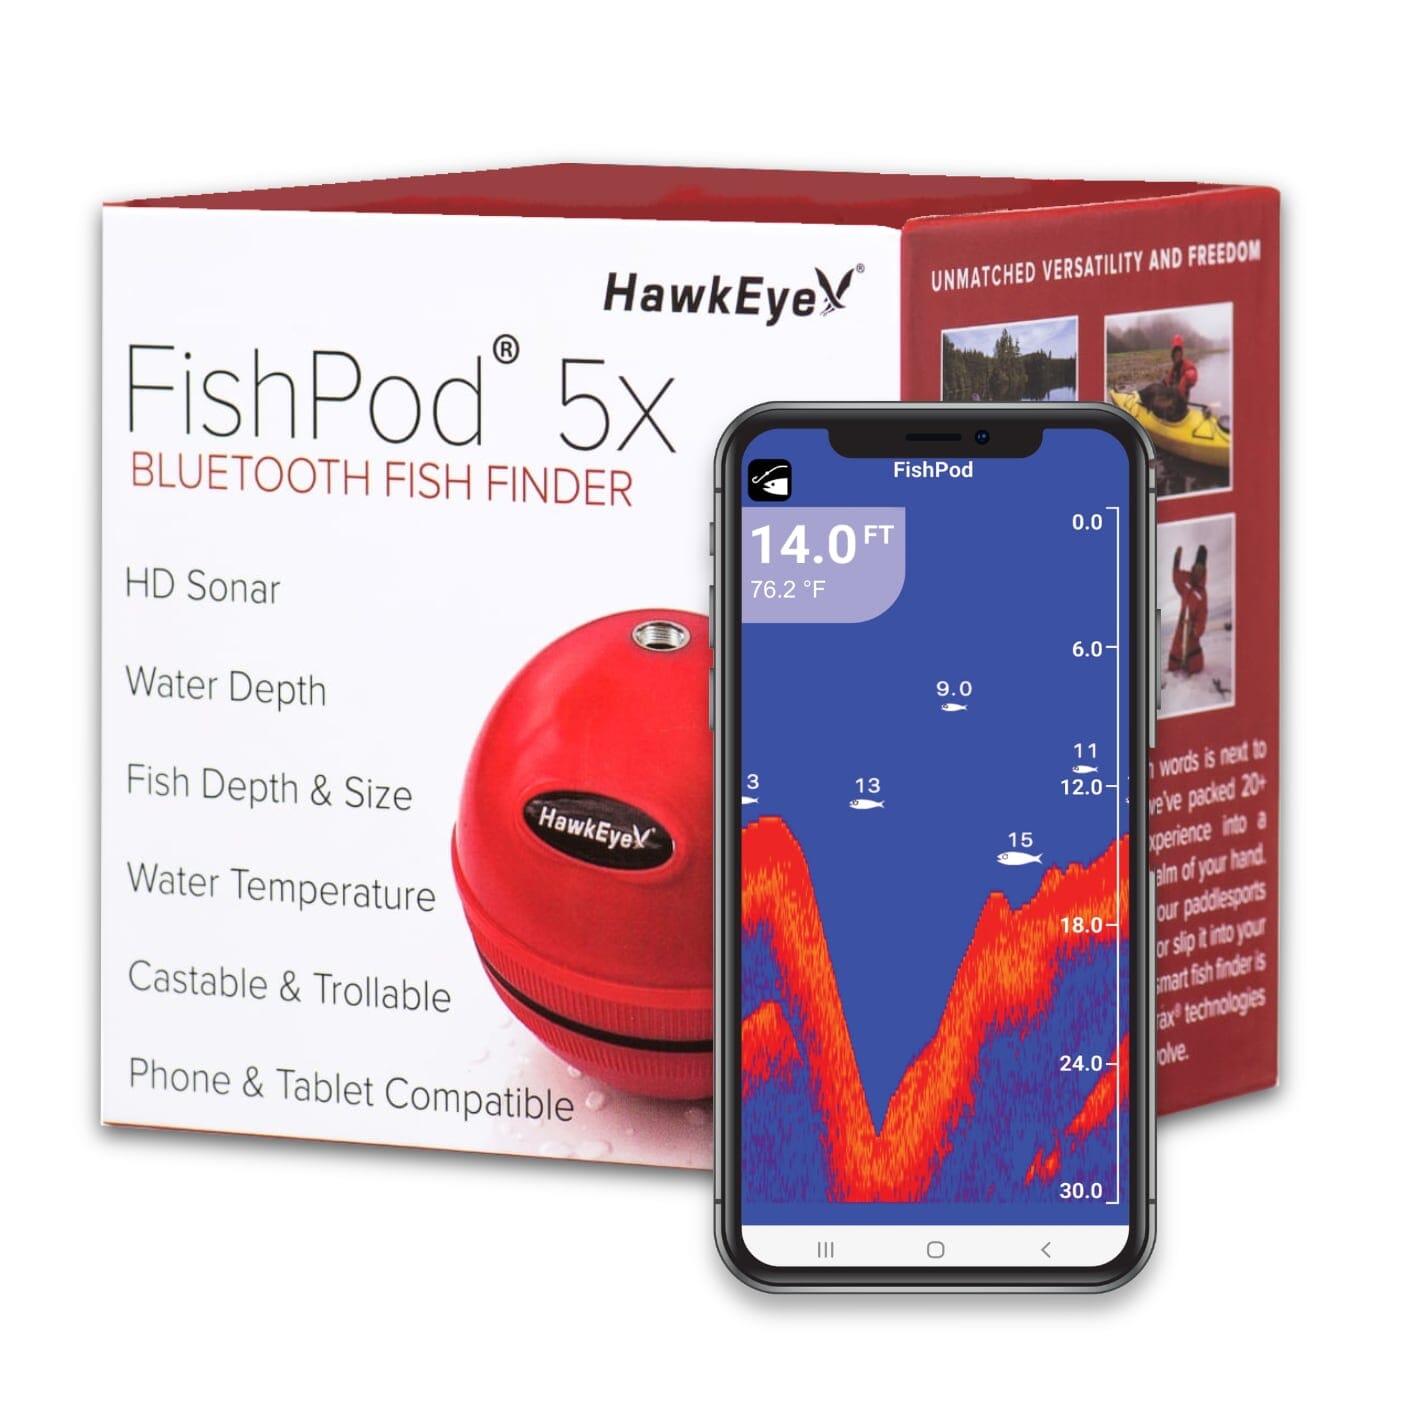 FishPod® 5X BlueTooth Fish Finder